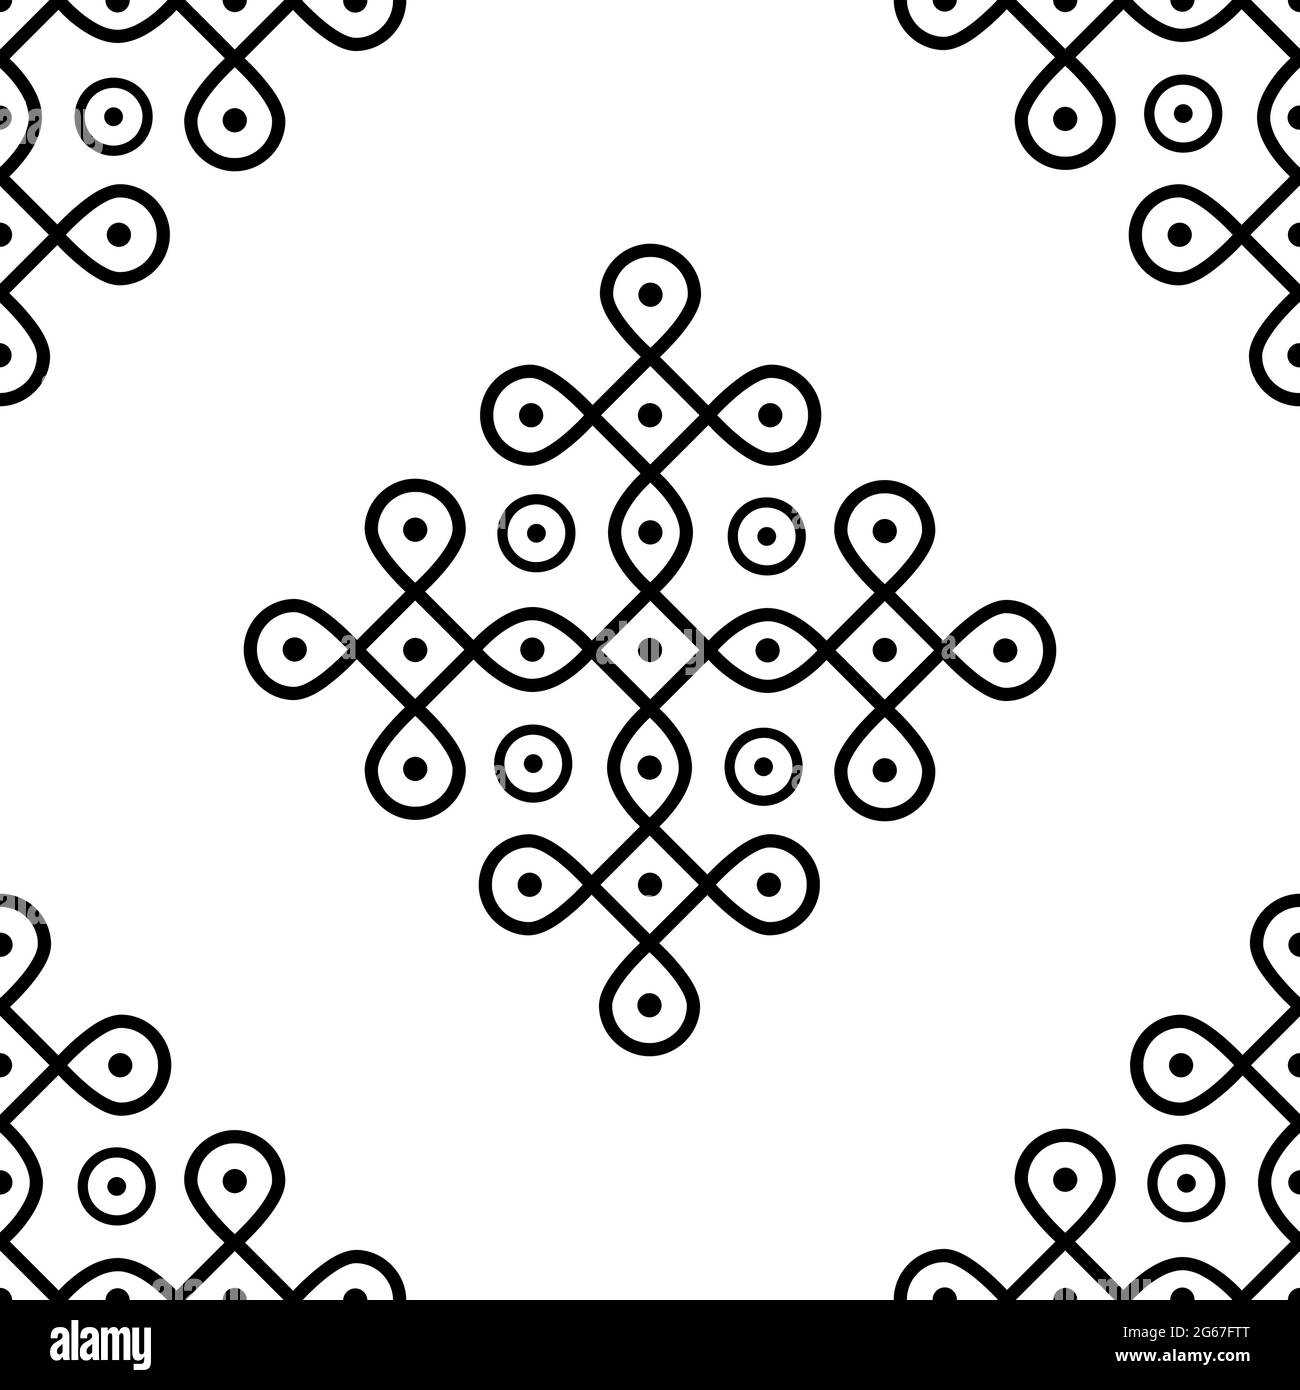 Indian Traditional and Cultural Rangoli oder Kolam Design Konzept der geschwungenen Linien und Punkte isoliert auf weißem Hintergrund ist in Nahtloses Muster Stock Vektor